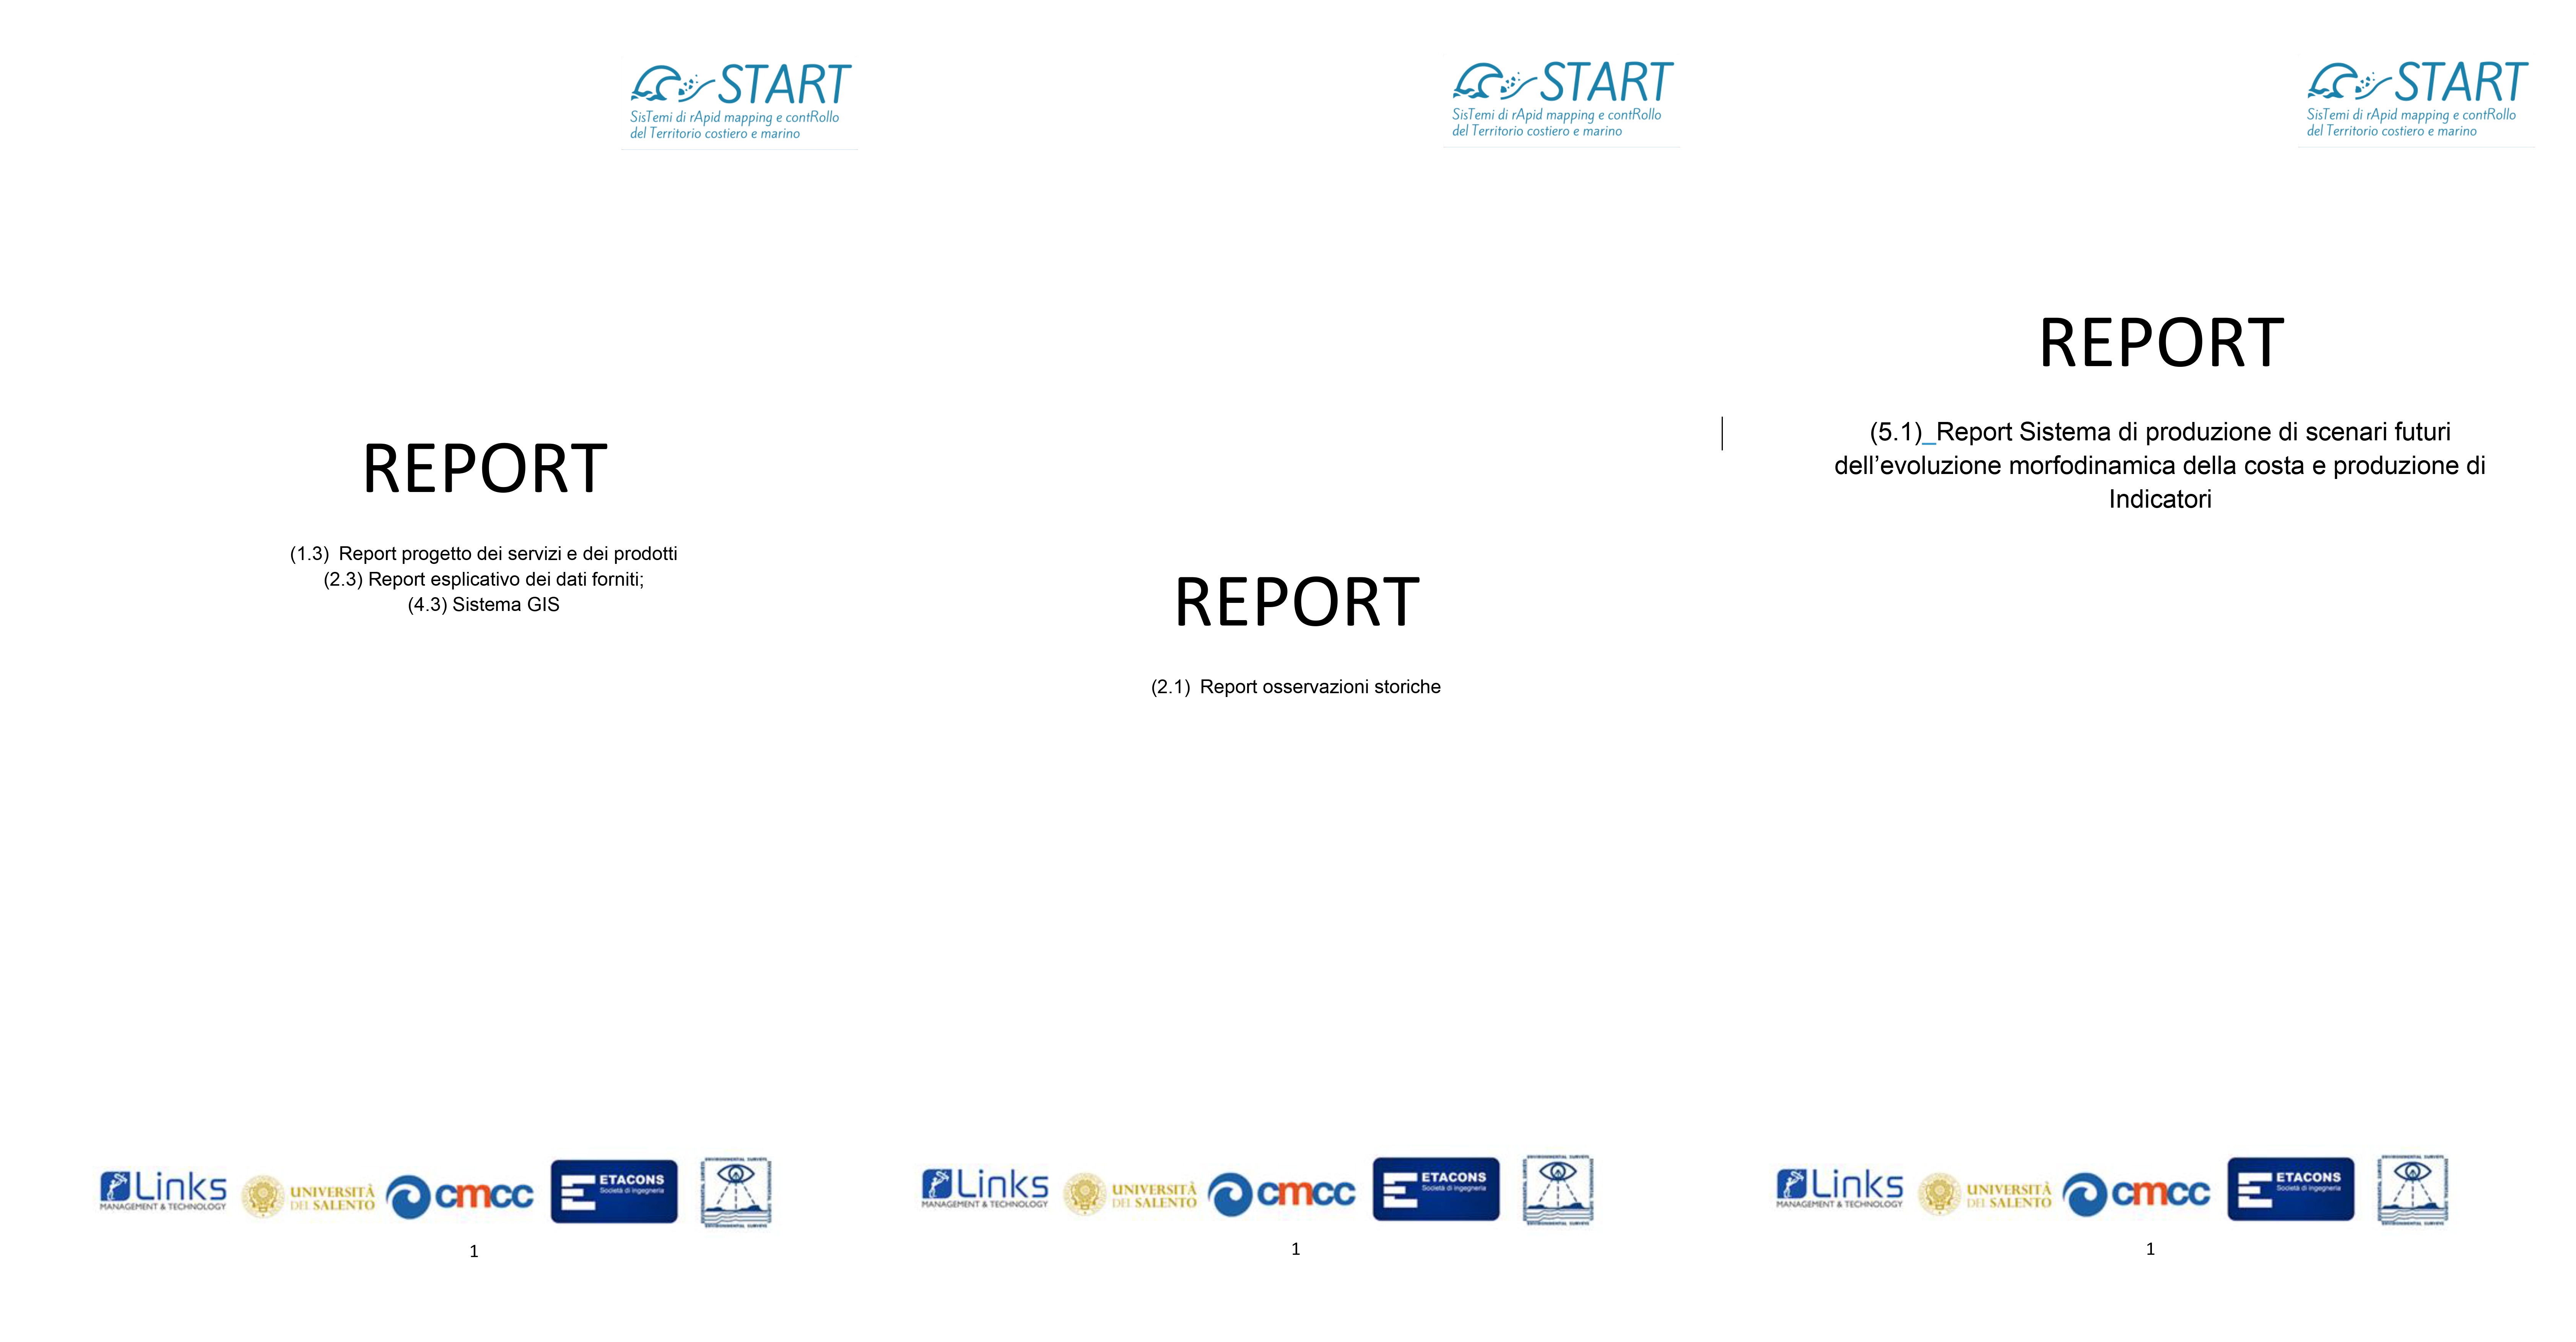 REPORT START